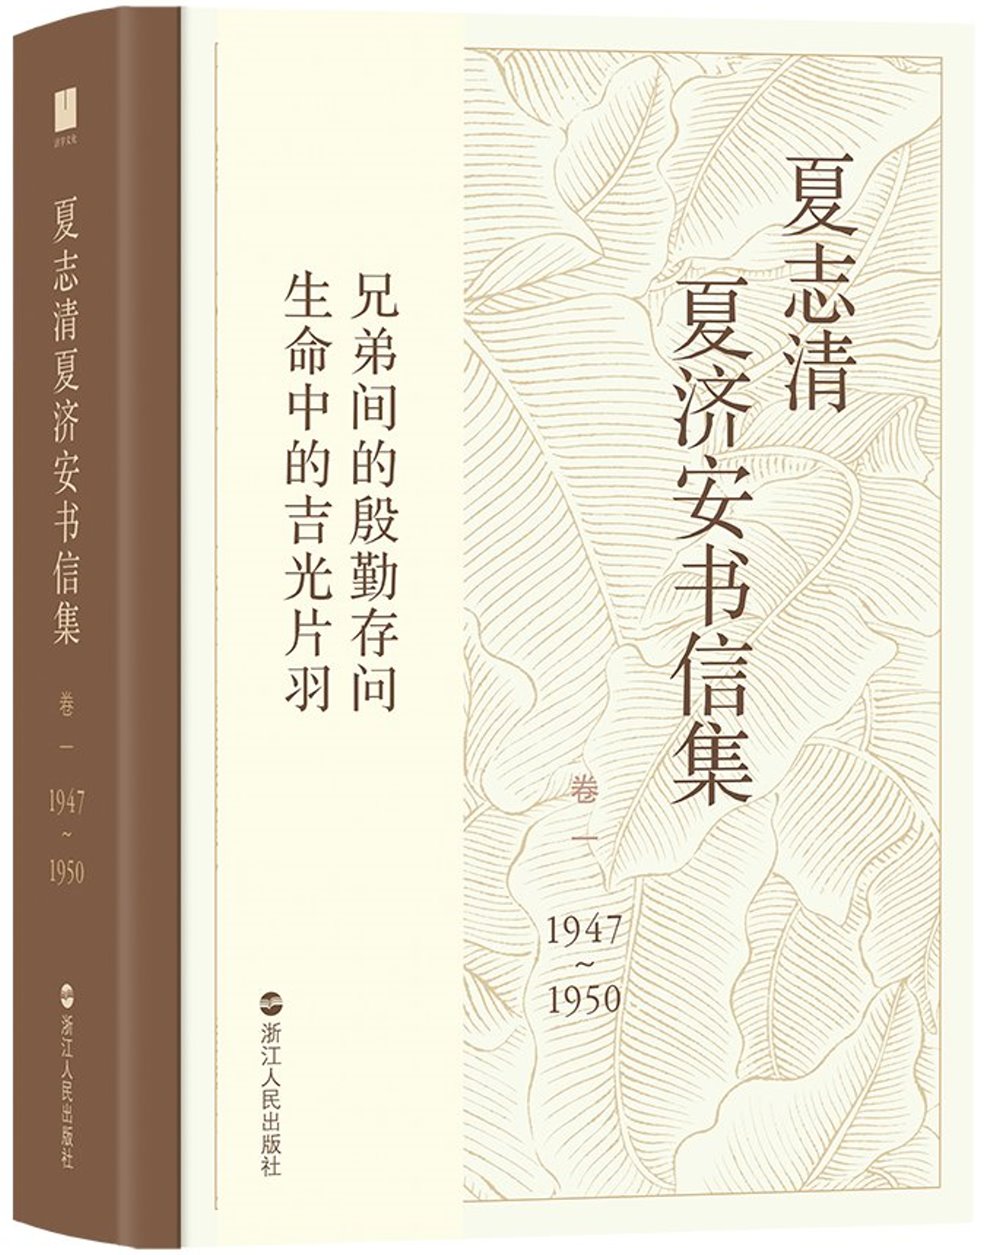 夏志清夏濟安書信（卷一）（1947-1950）